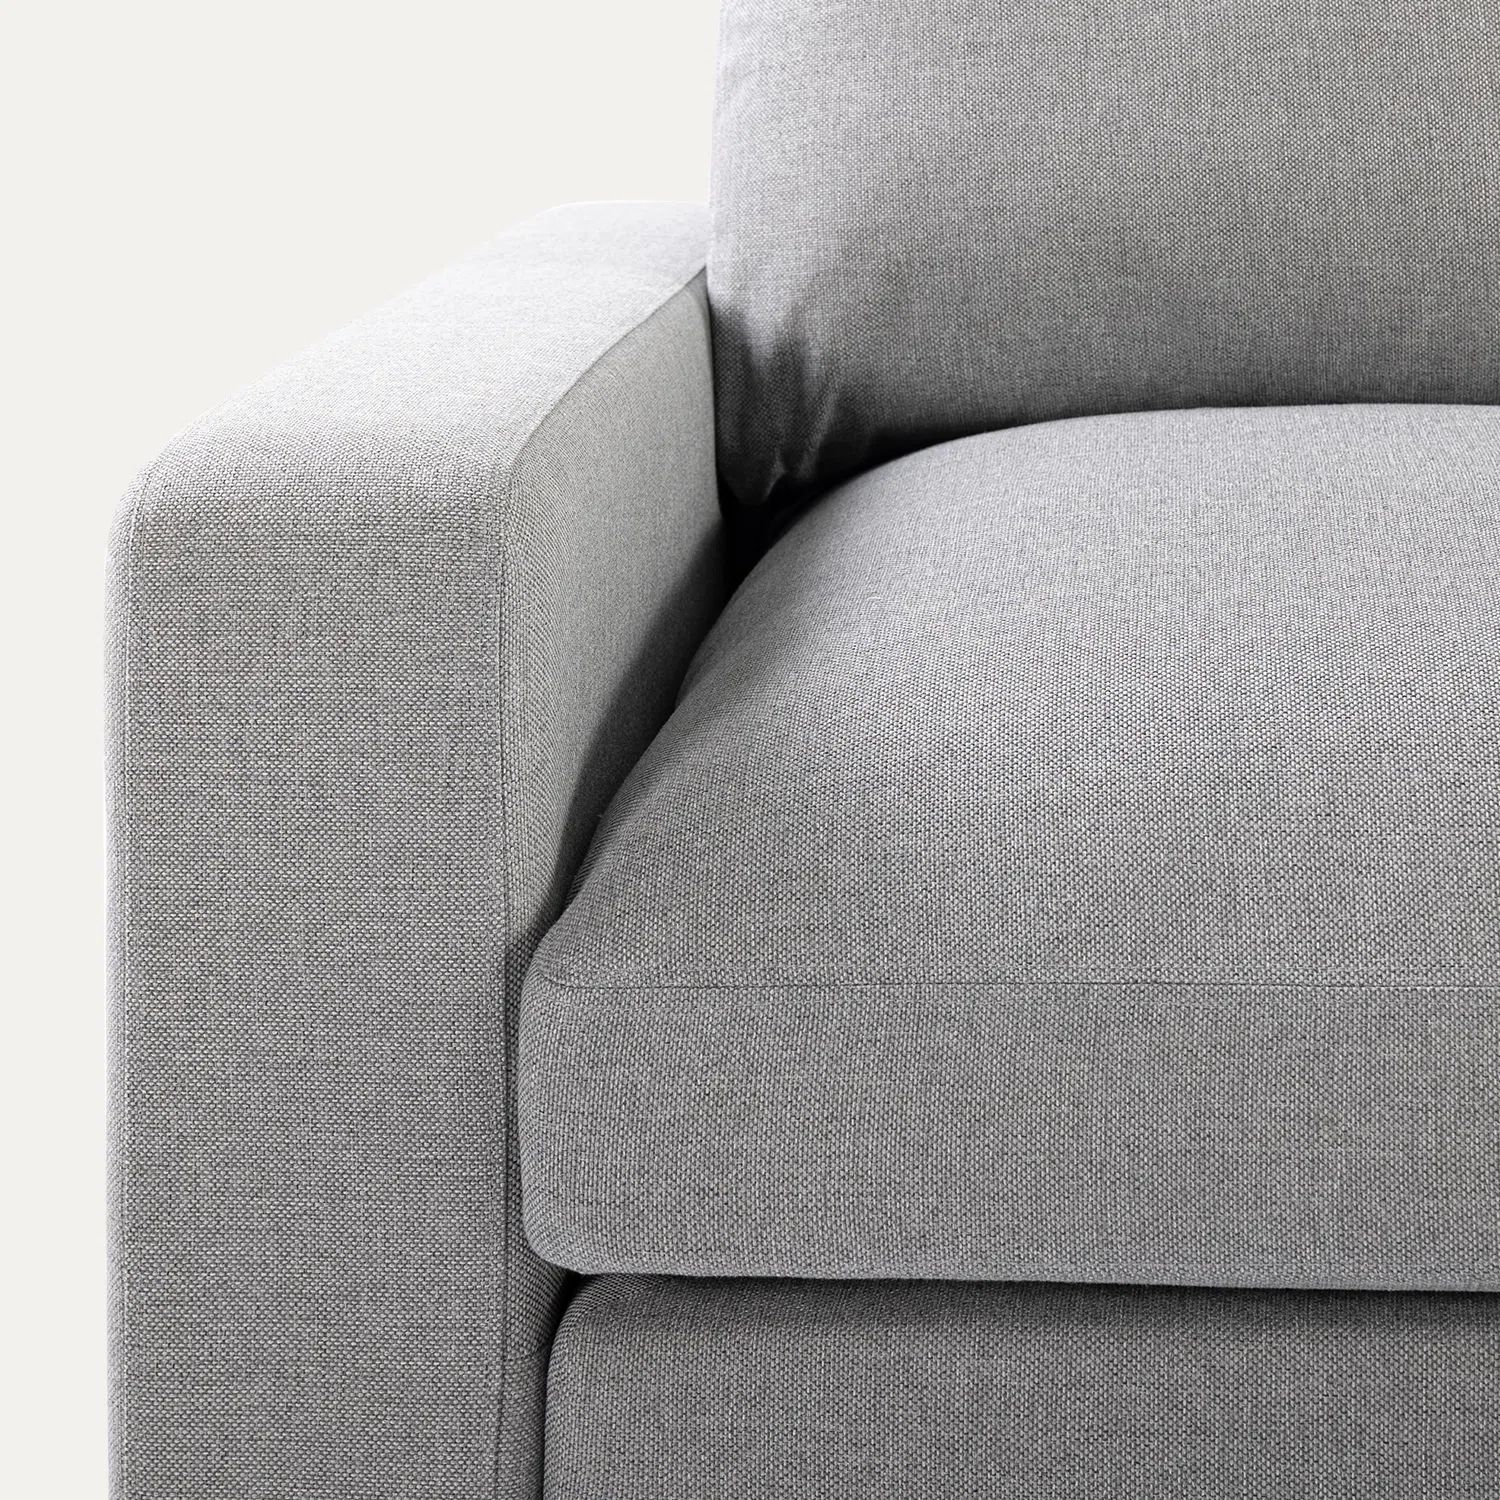  Bộ ghế sofa góc chữ U GT22 2m8 x 1m6 cho phòng khách lớn 